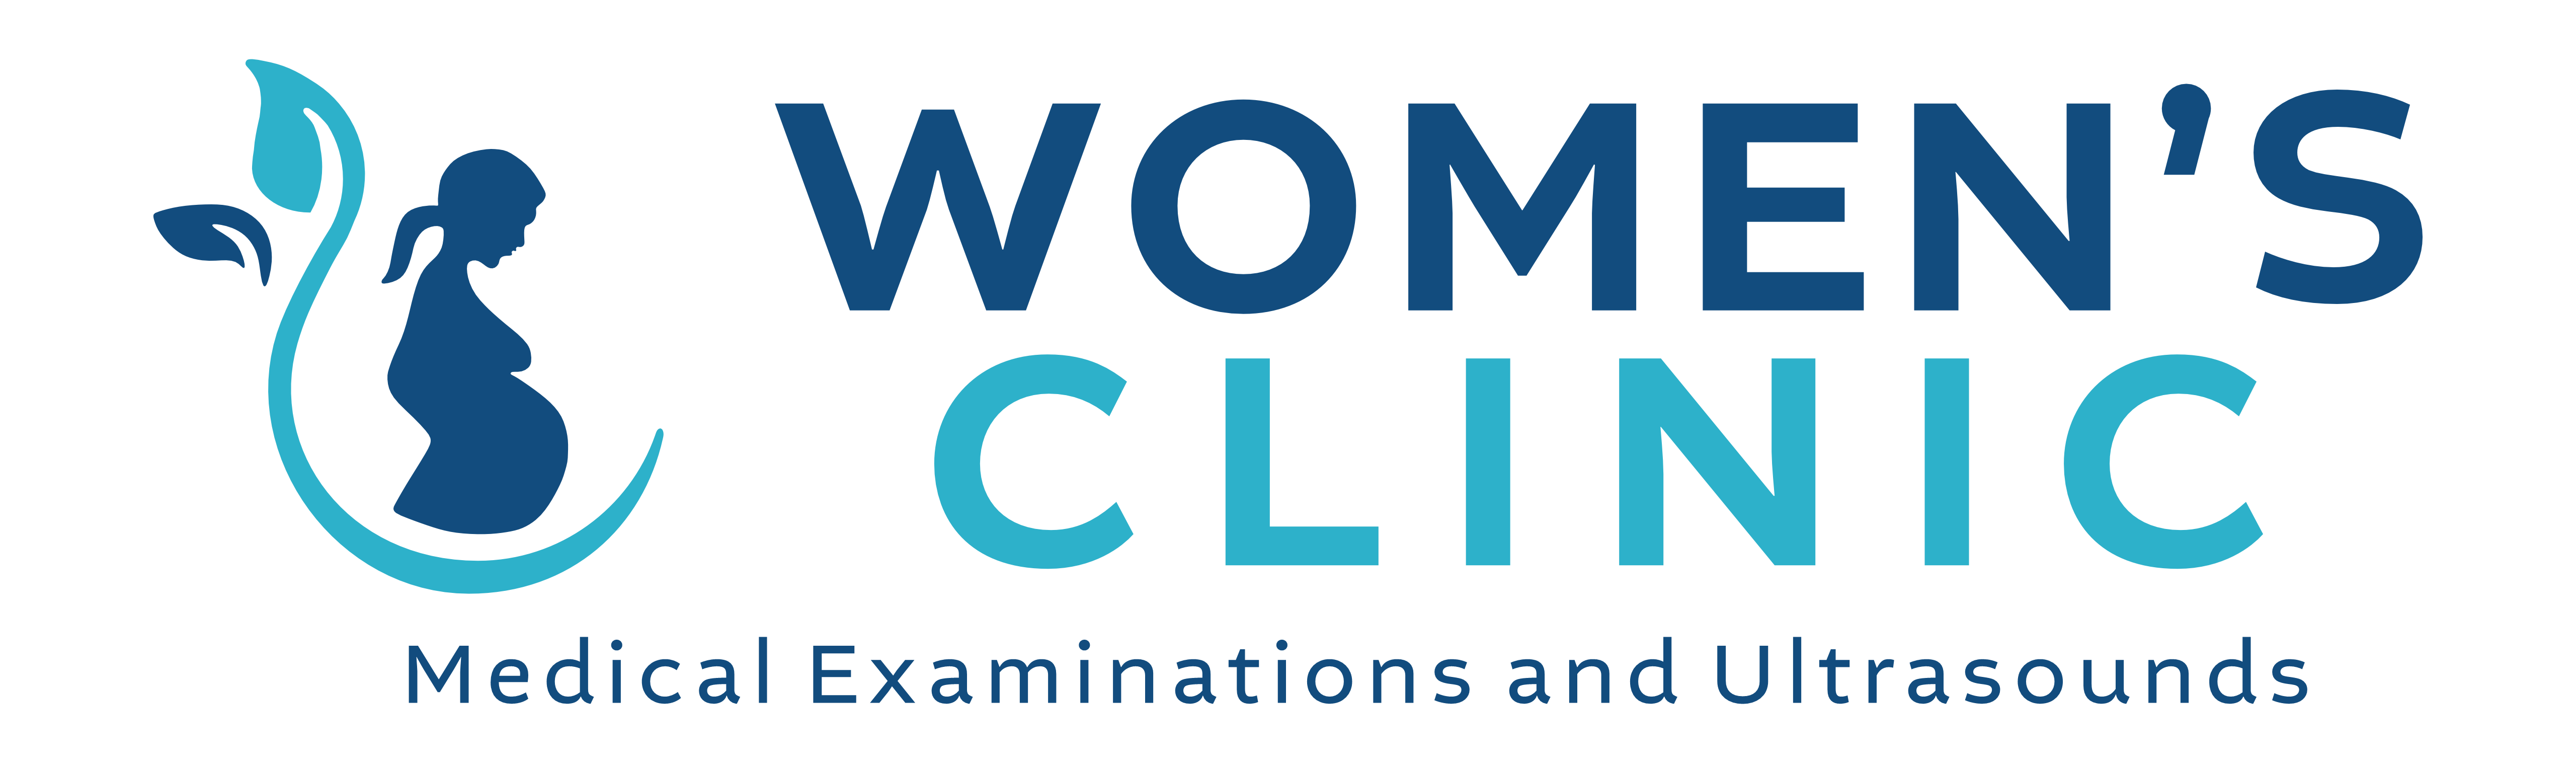 womens clinic transparent logo